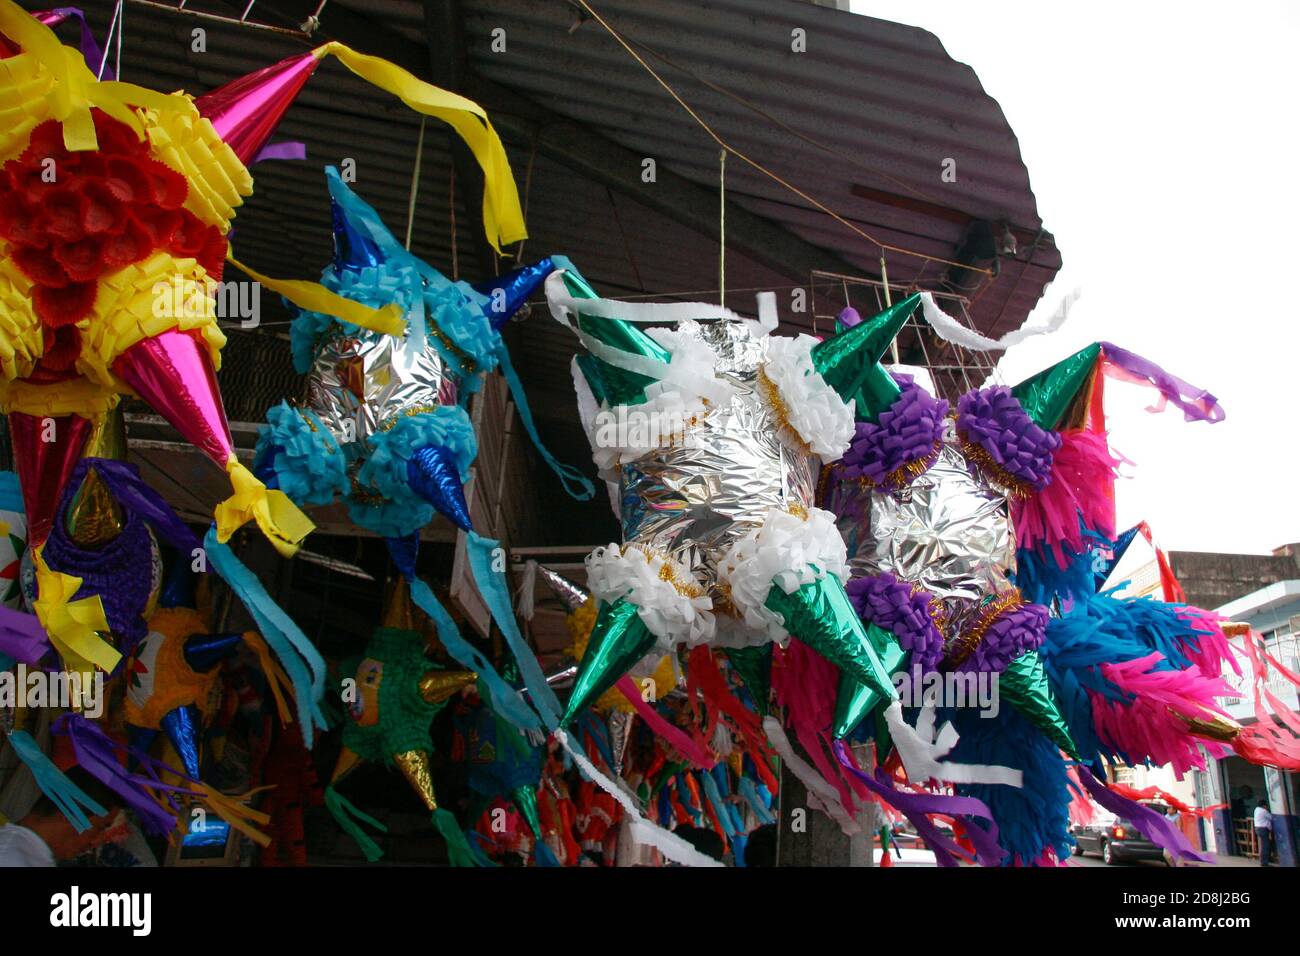 Vente de matériel pinatas piñatas pour les fêtes et les célébrations traditionnelles, Villahermosa, Tabasco, Mexique. Banque D'Images